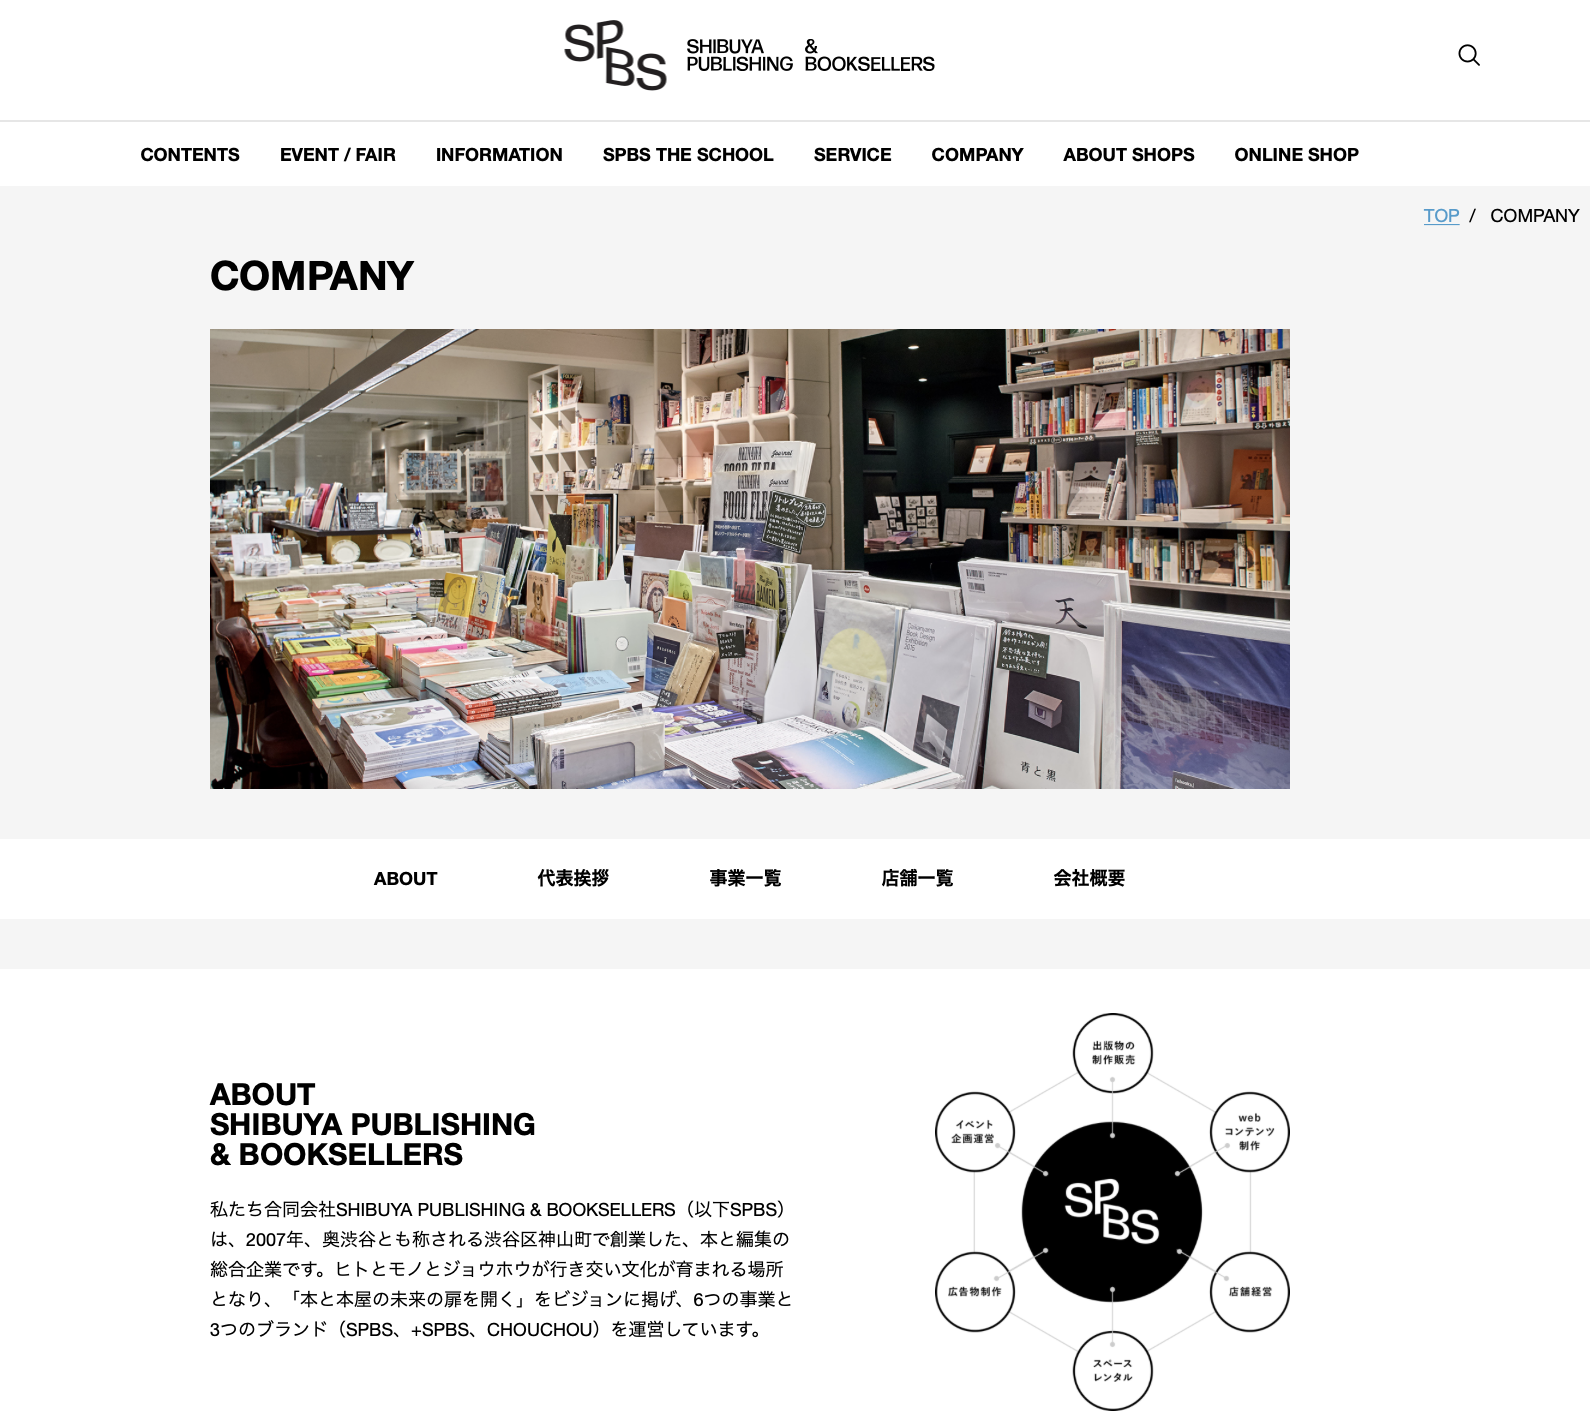 合同会社 SHIBUYA PUBLISHING & BOOKSELLERSの合同会社SHIBUYA PUBLISHING & BOOKSELLERS:ホームページ制作サービス